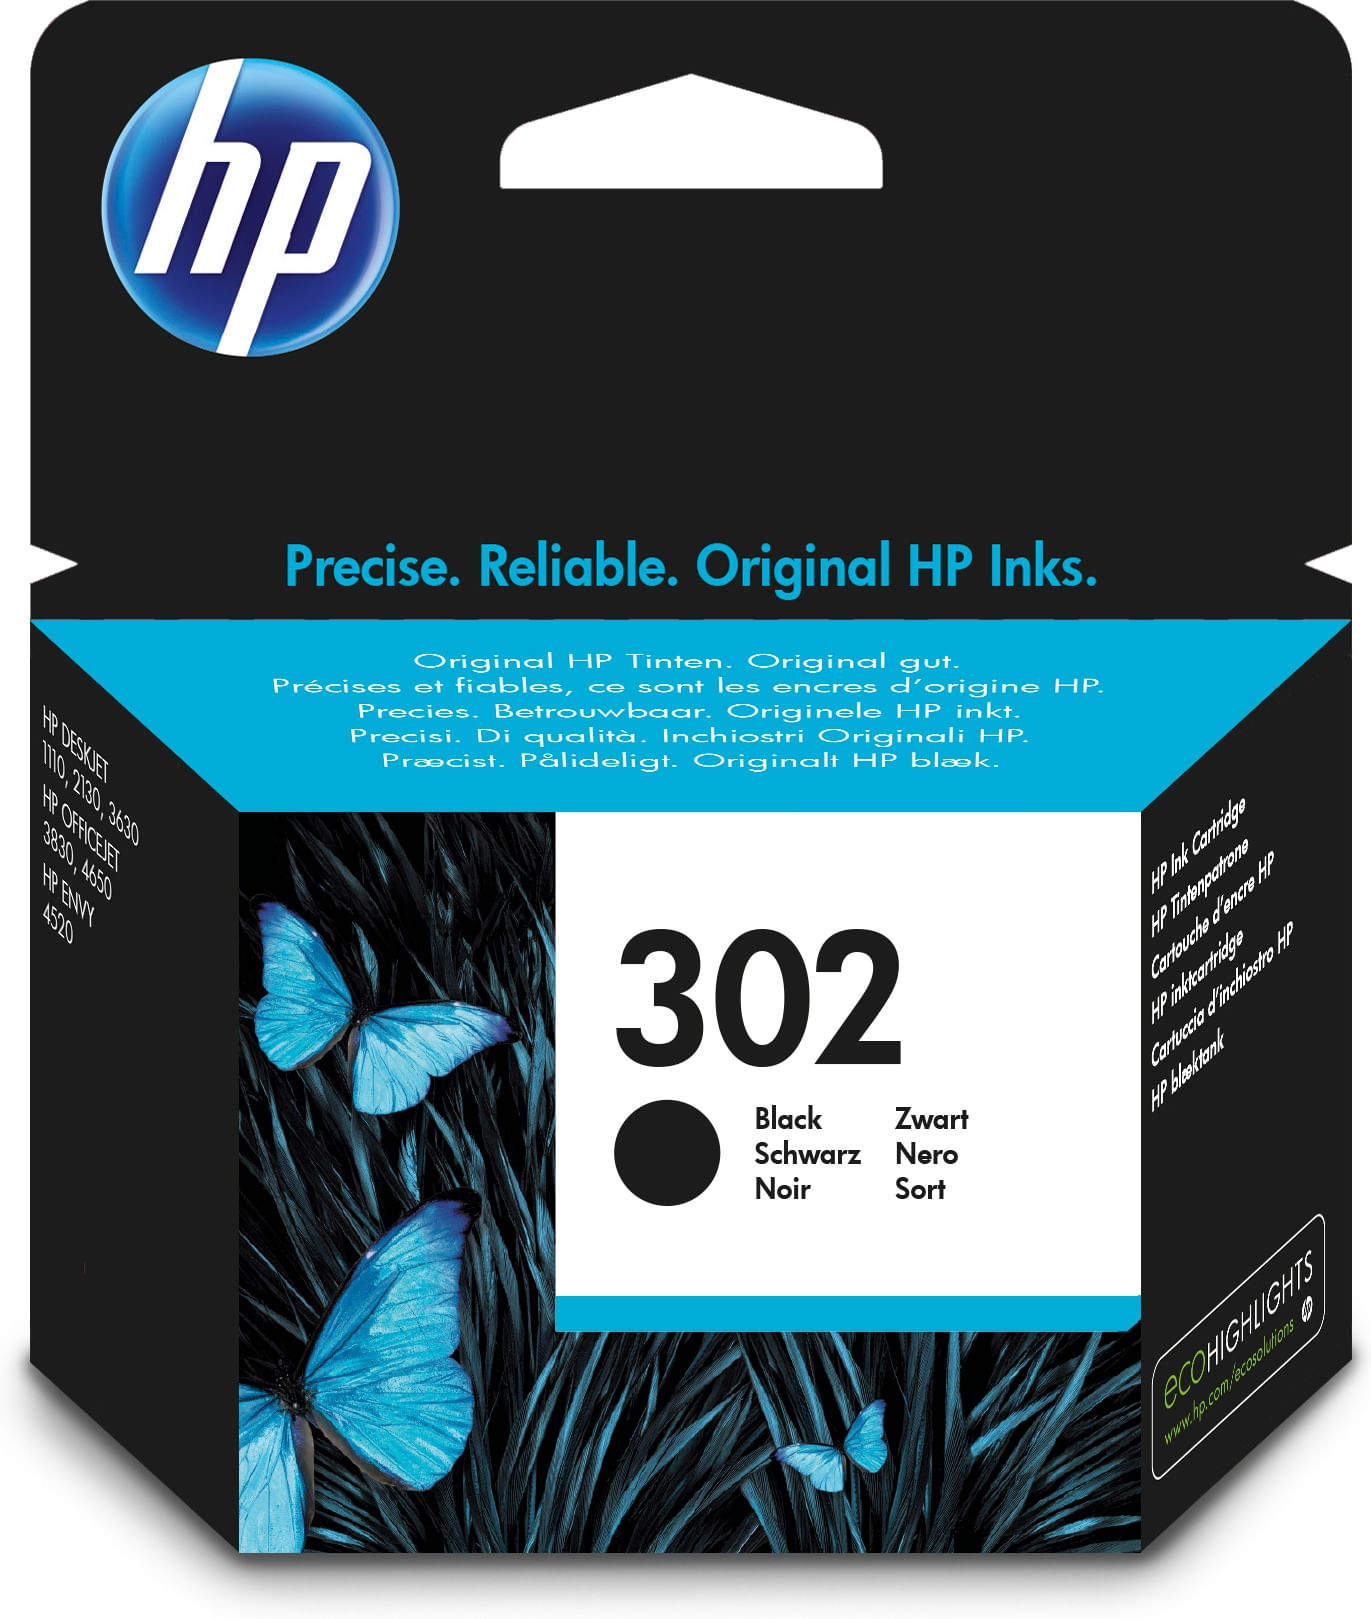 4657 HP OfficeJet stampante a getto d'inchiostro multifunzione